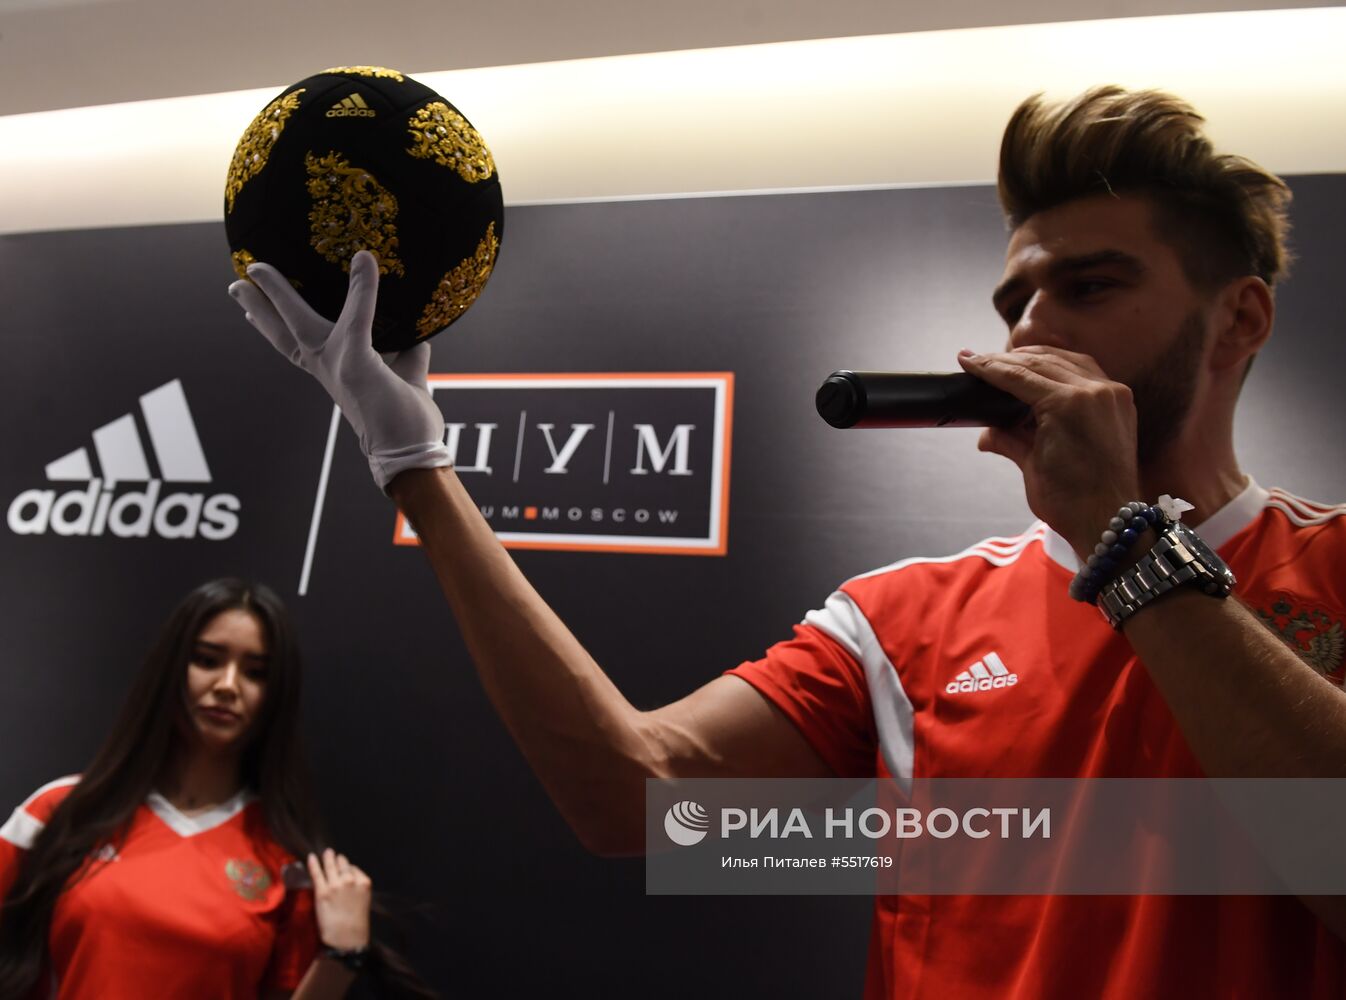 Открытие поп-ап-стора Adidas к ЧМ-2018 по футболу